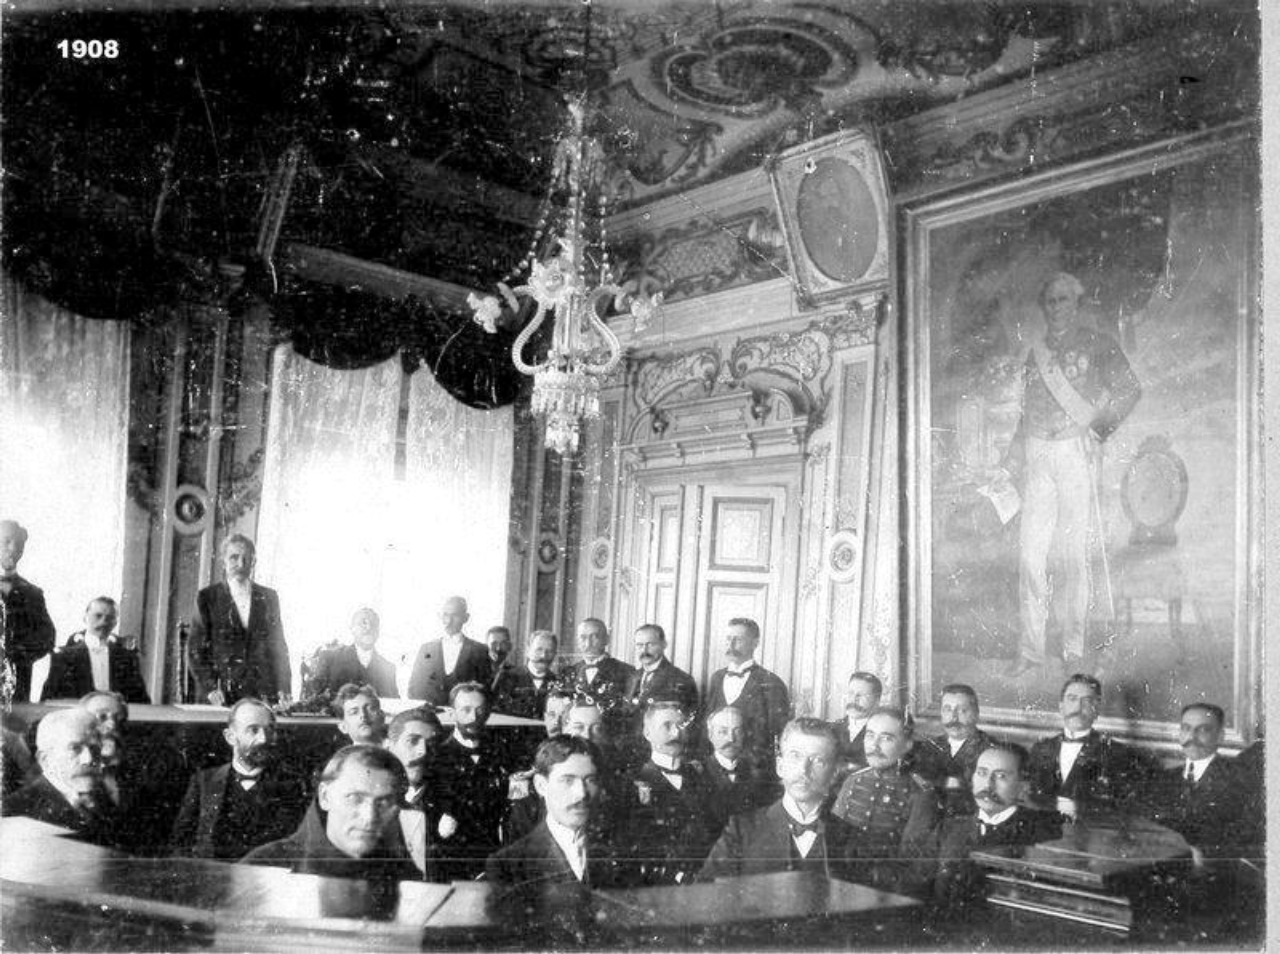 Em registro com anotação de 1908, o salão do segundo andar recebe uma reunião, possivelmente da Prefeitura ou da Câmara Municipal de Paranaguá. Foto: Reprodução